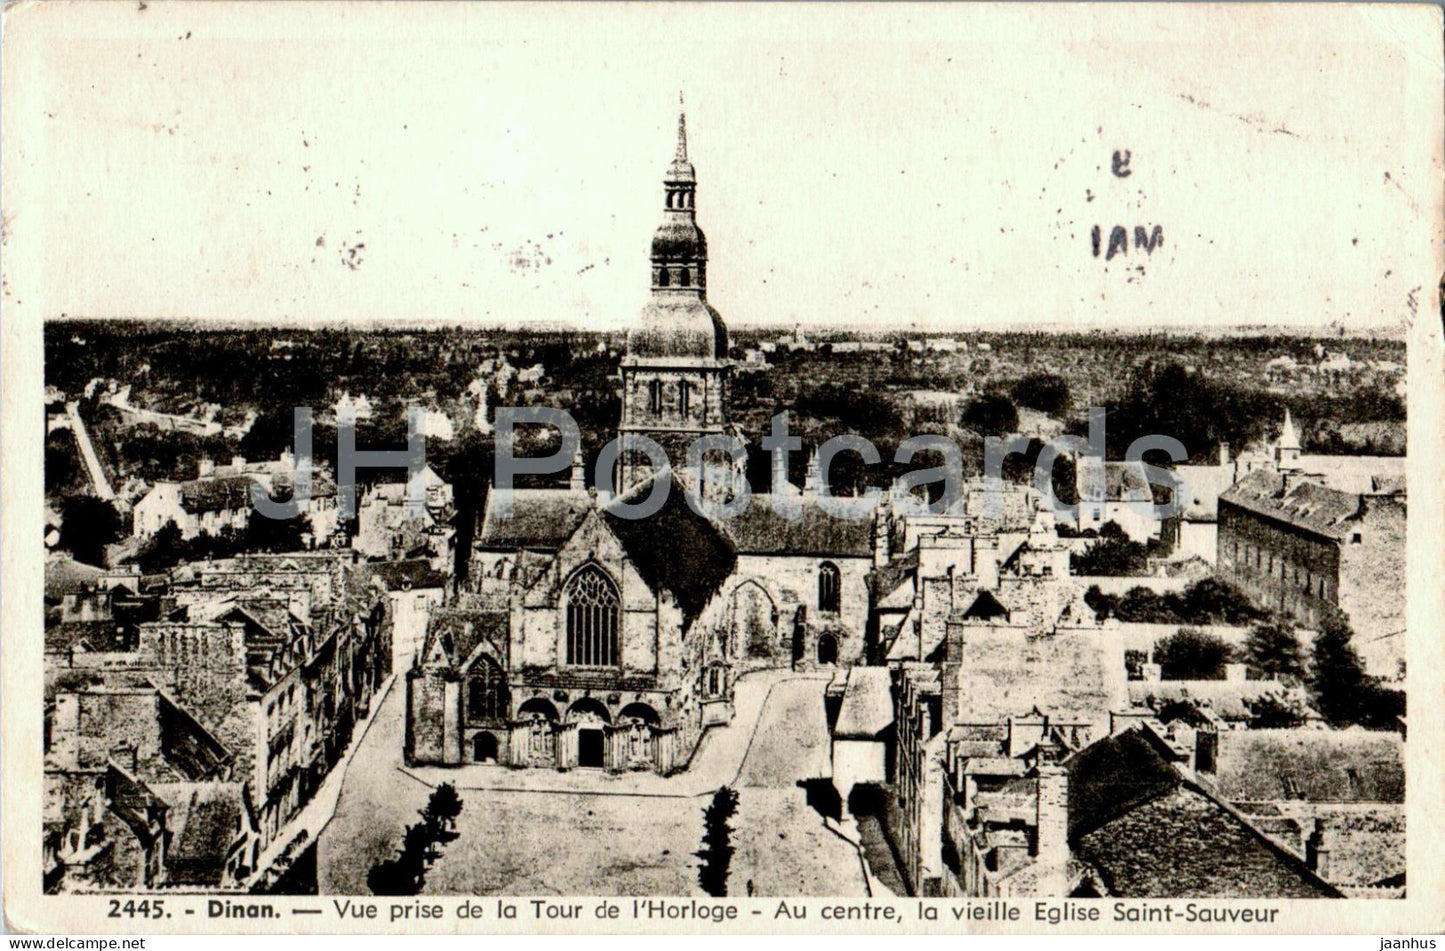 Dinan - Vue prise de la Tour de l'Horloge - Au centre la vieille Eglise - 2445 - old postcard - 1951 - France - used - JH Postcards